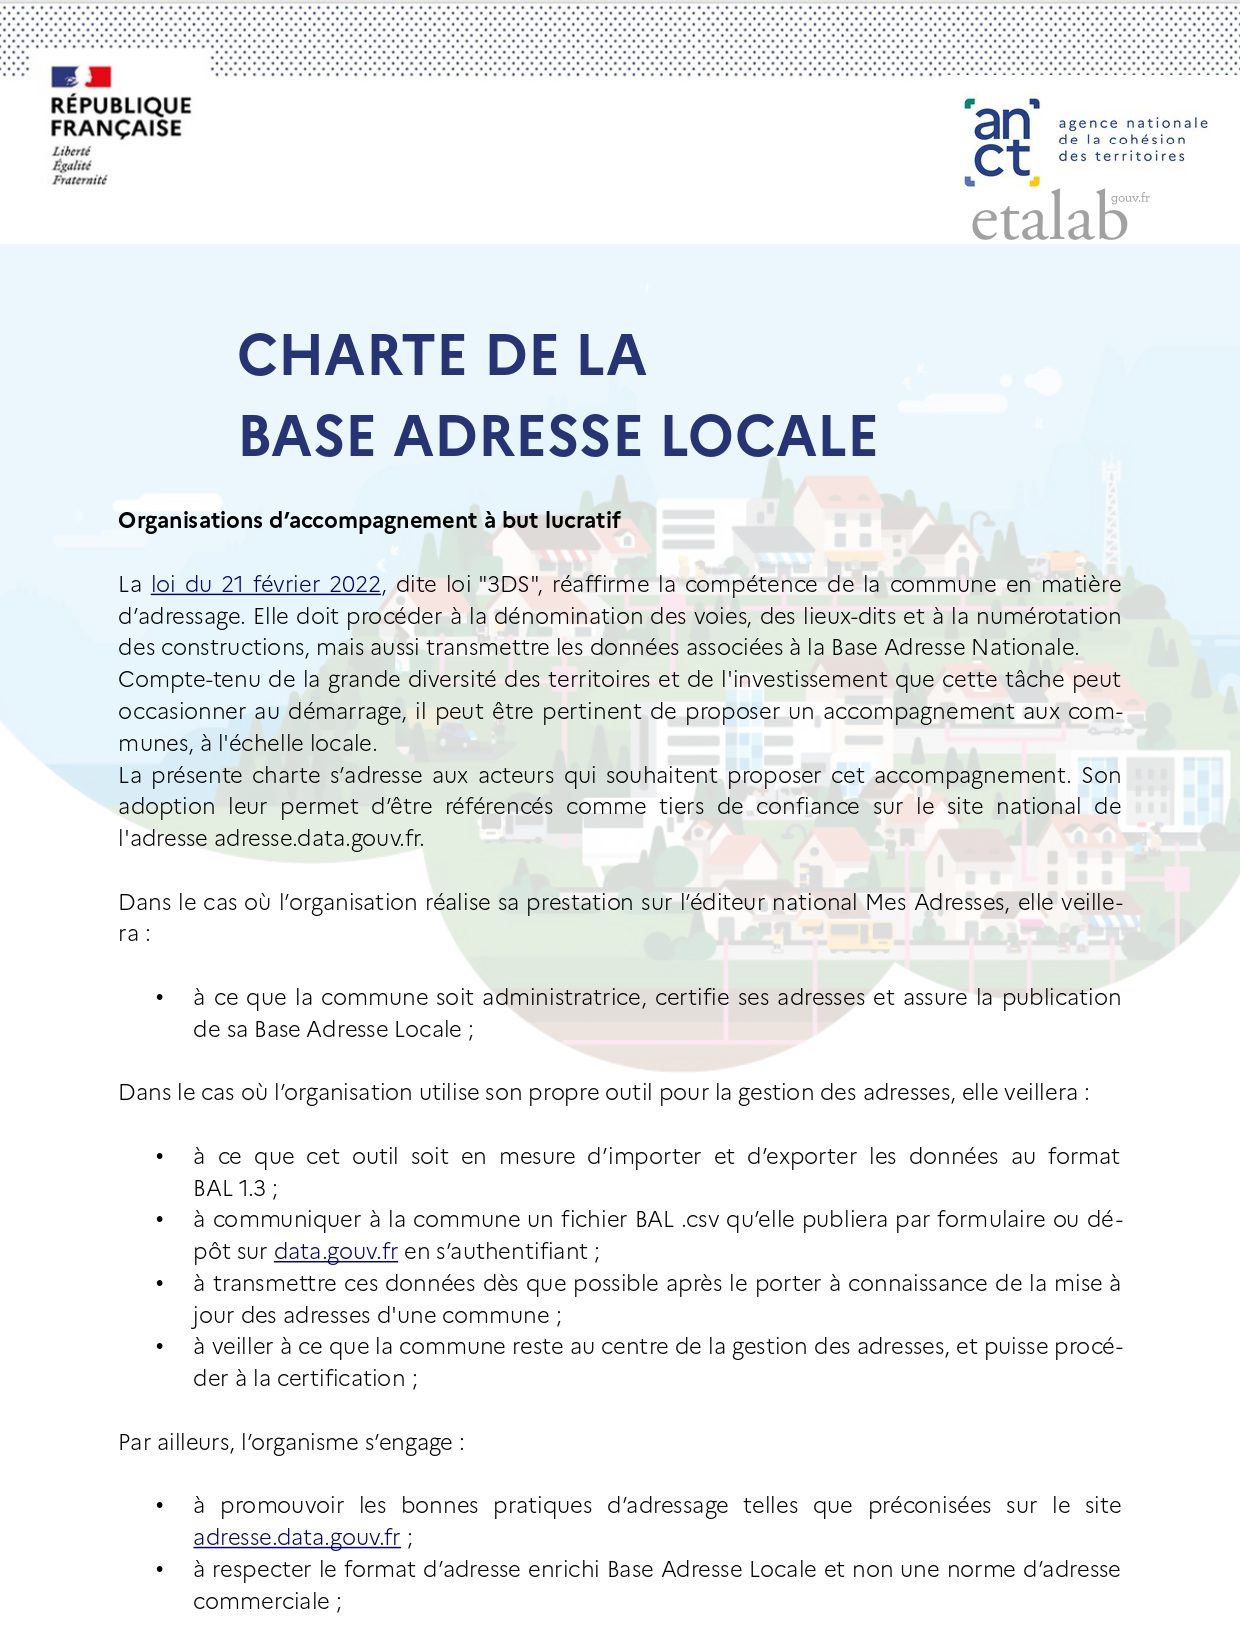 https://prodexa.fr/wp-content/uploads/2022/10/Charte-de-la-Base-Adresse-Locale-organisation-à-but-lucratif_page-0001-e1665677435210.jpg